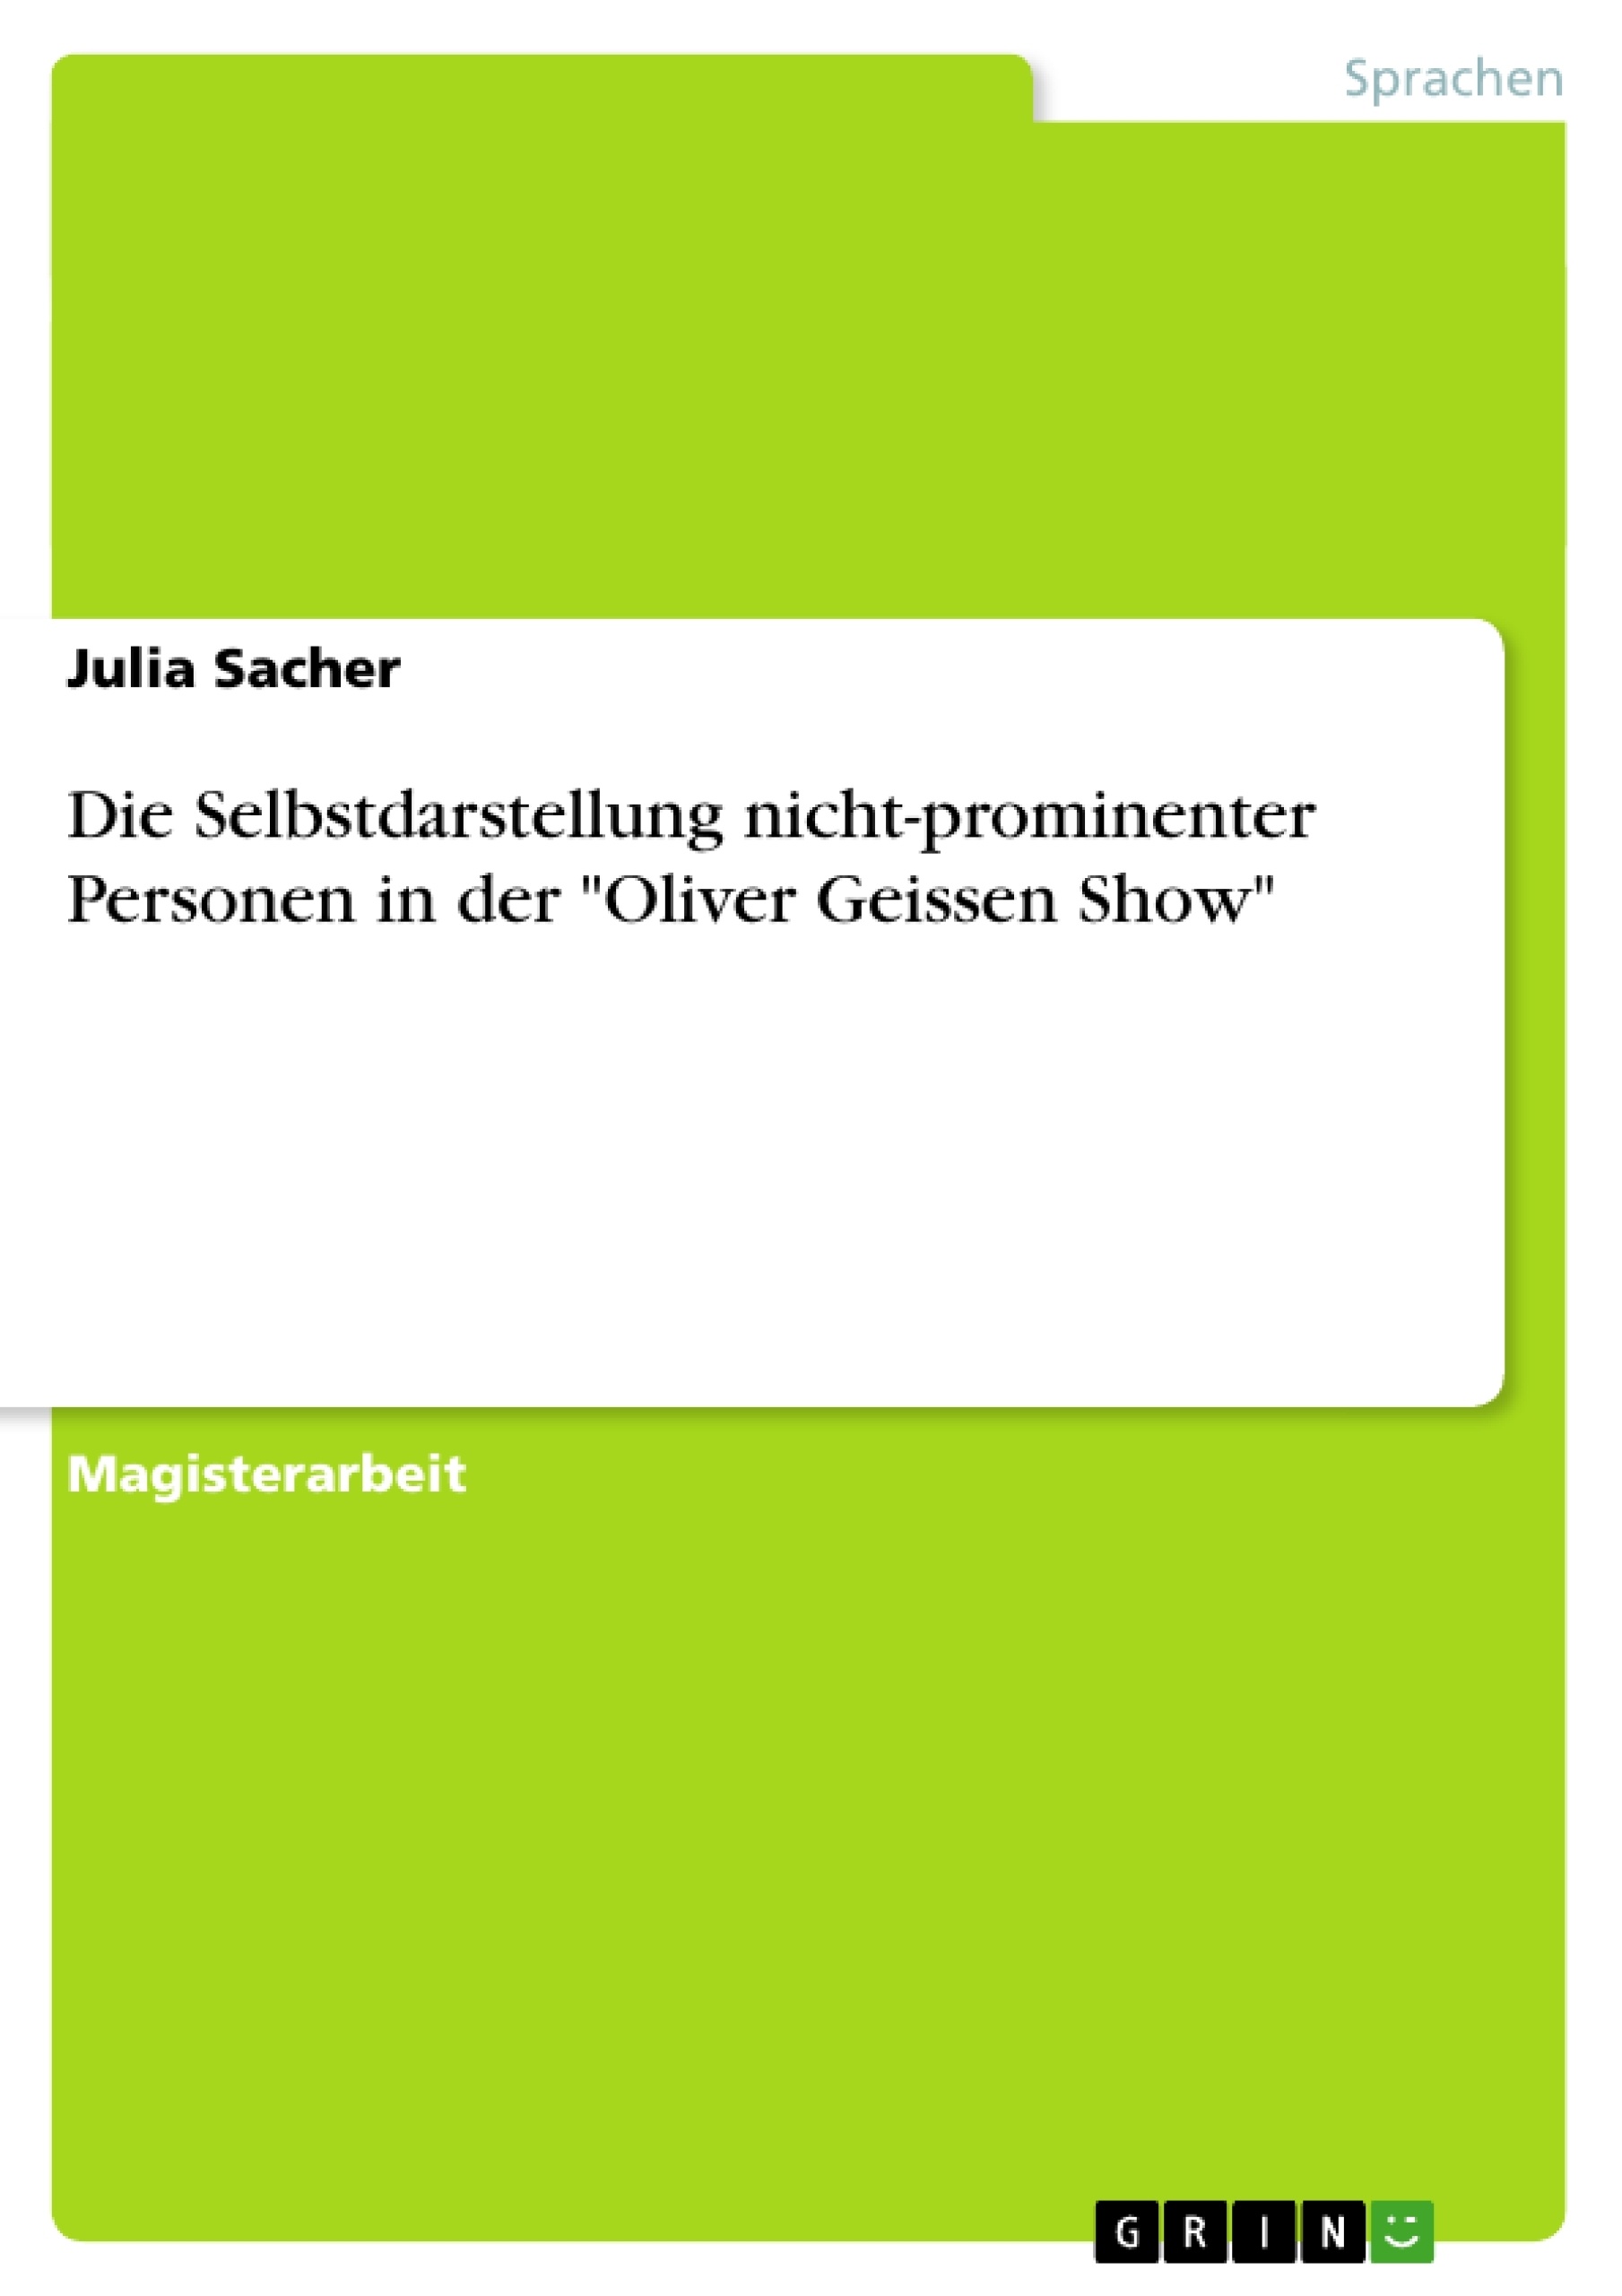 Titre: Die Selbstdarstellung nicht-prominenter Personen in der "Oliver Geissen Show"